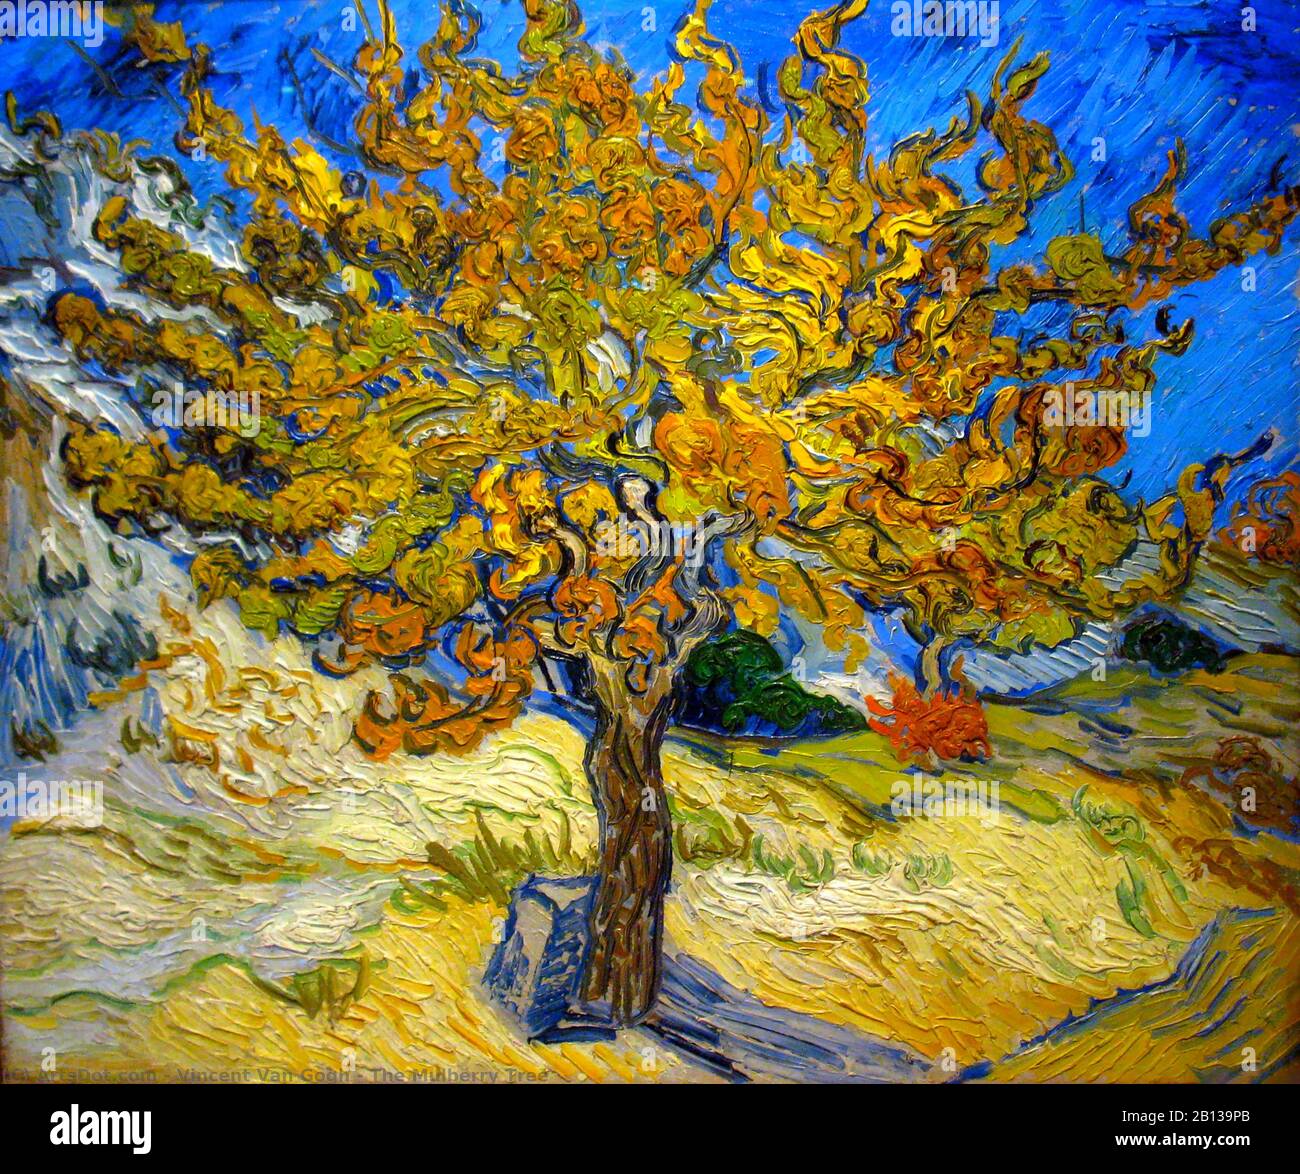 La peinture de l'arbre des mûres de Vincent van Gogh - image Très haute résolution et de qualité Banque D'Images